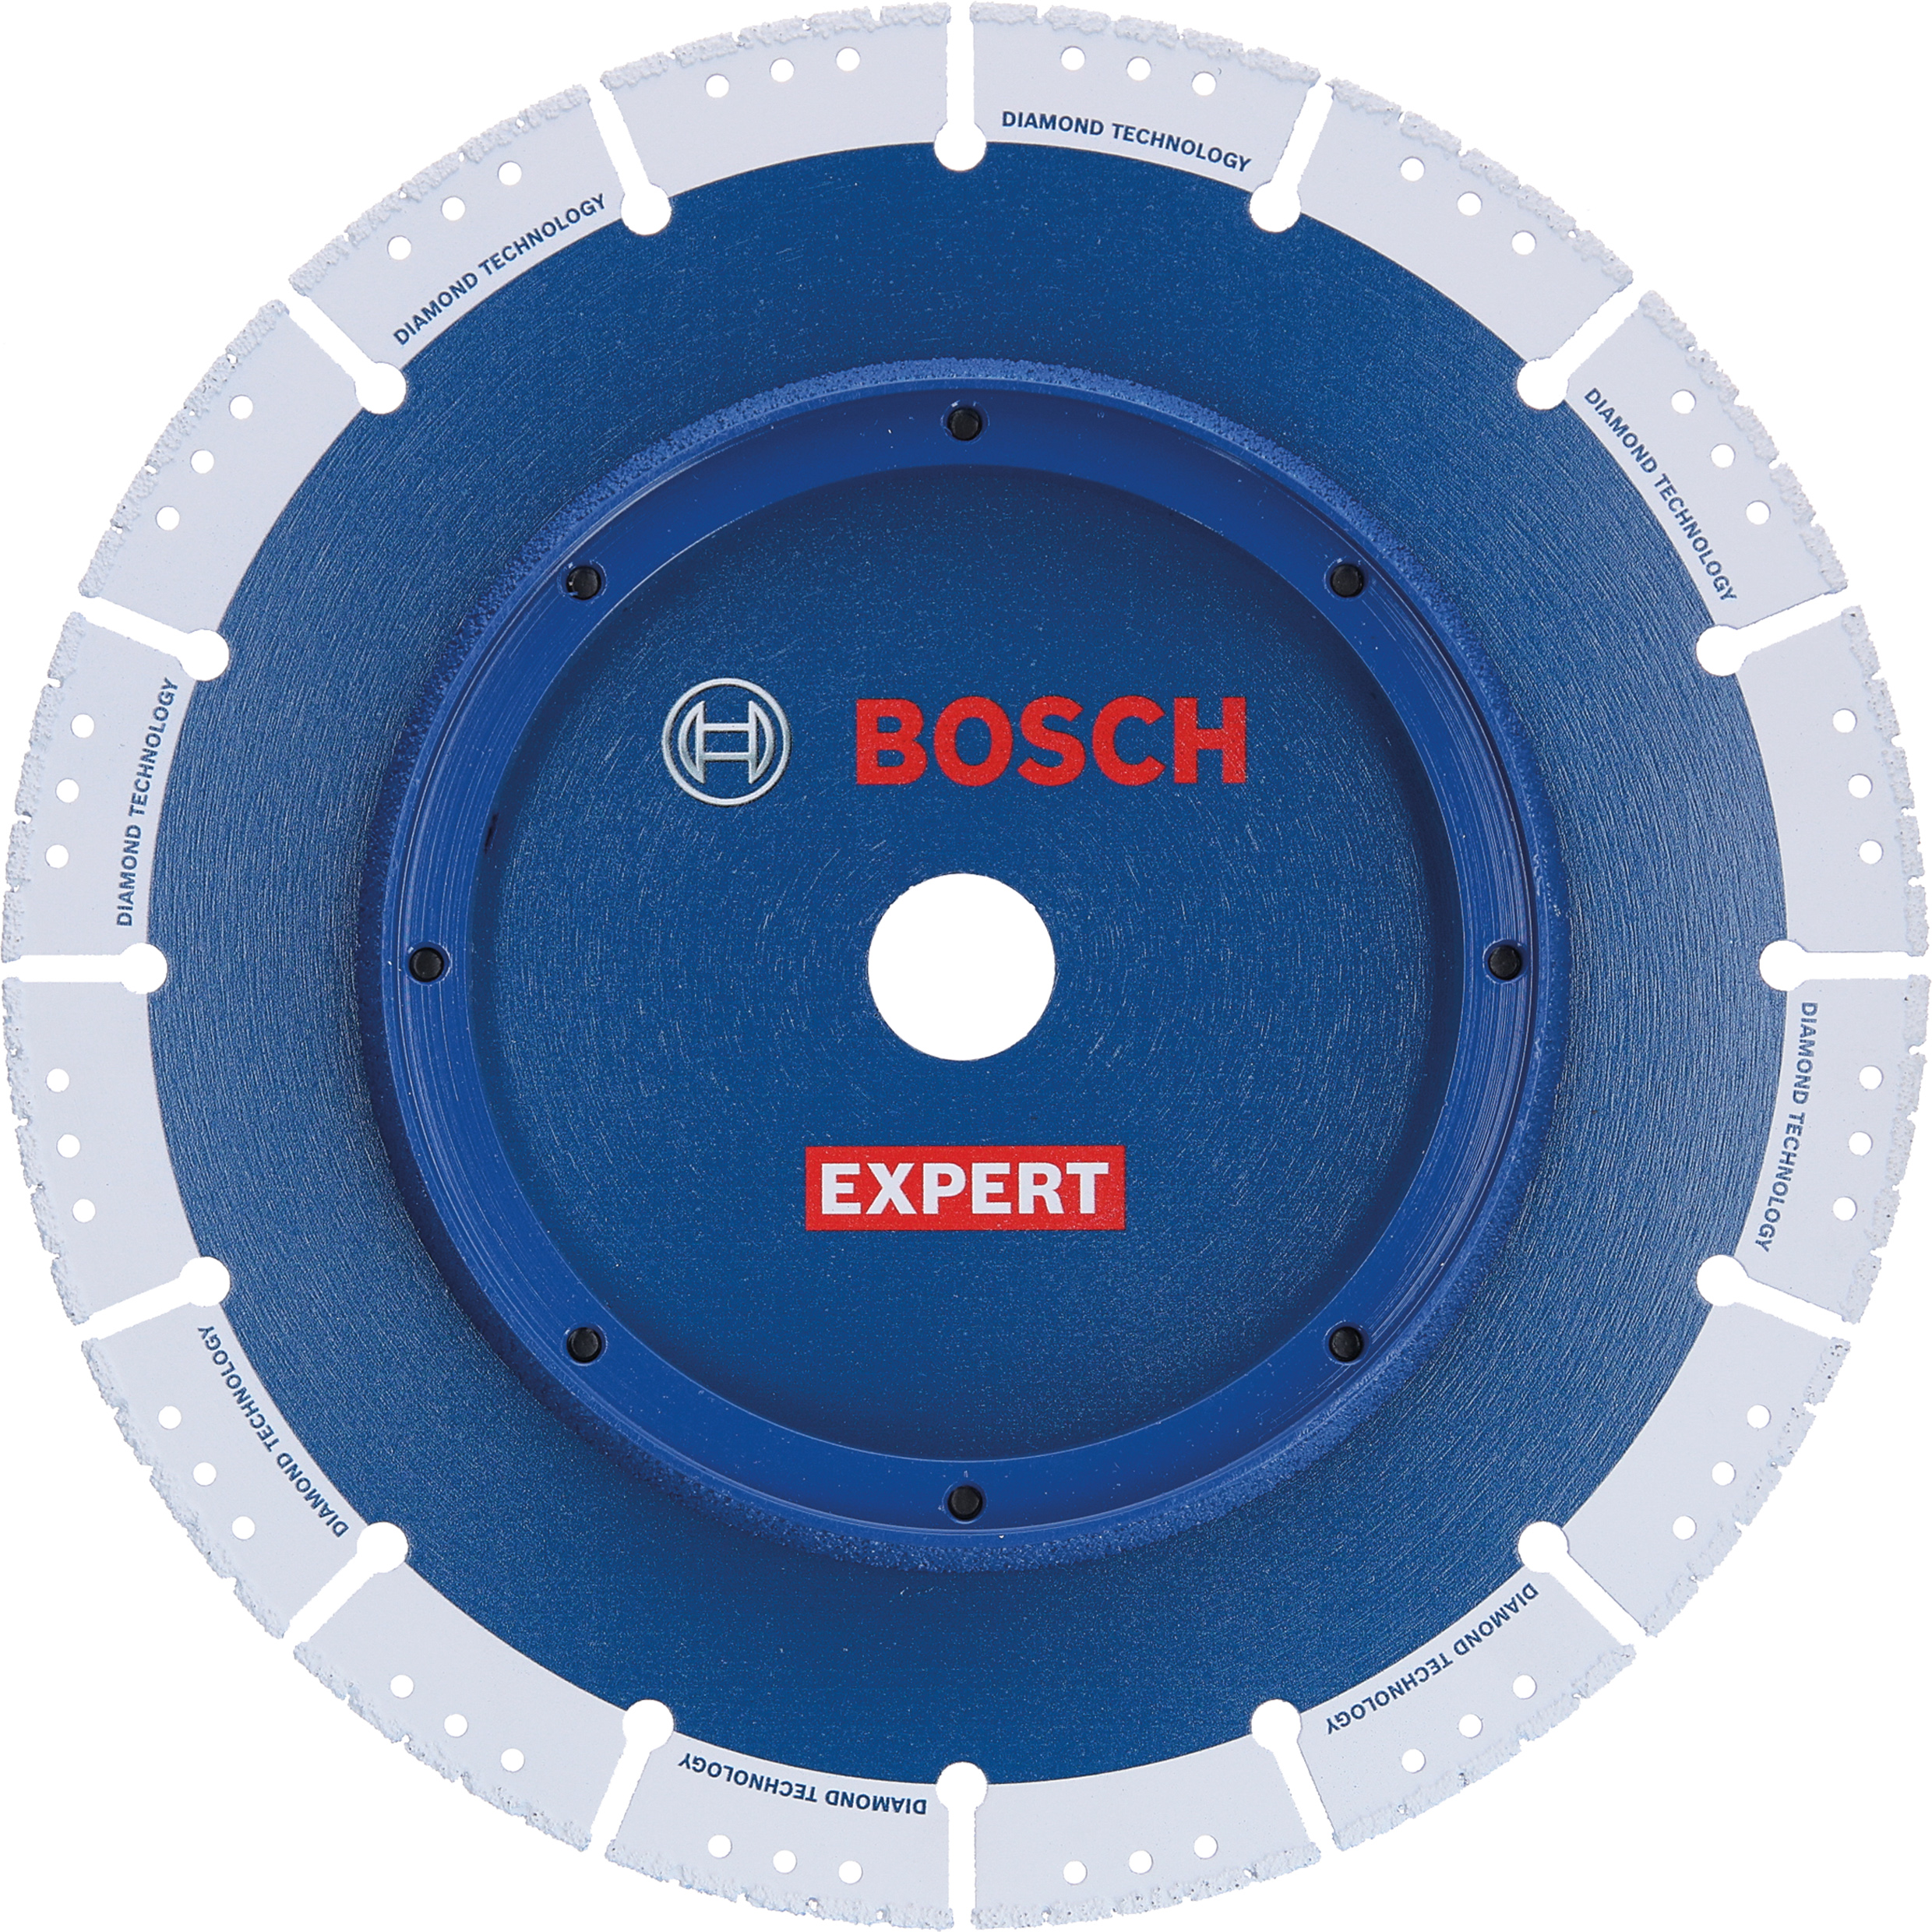 Bosch EXPERT Diamond Pipe Cut Wheel 230 mm